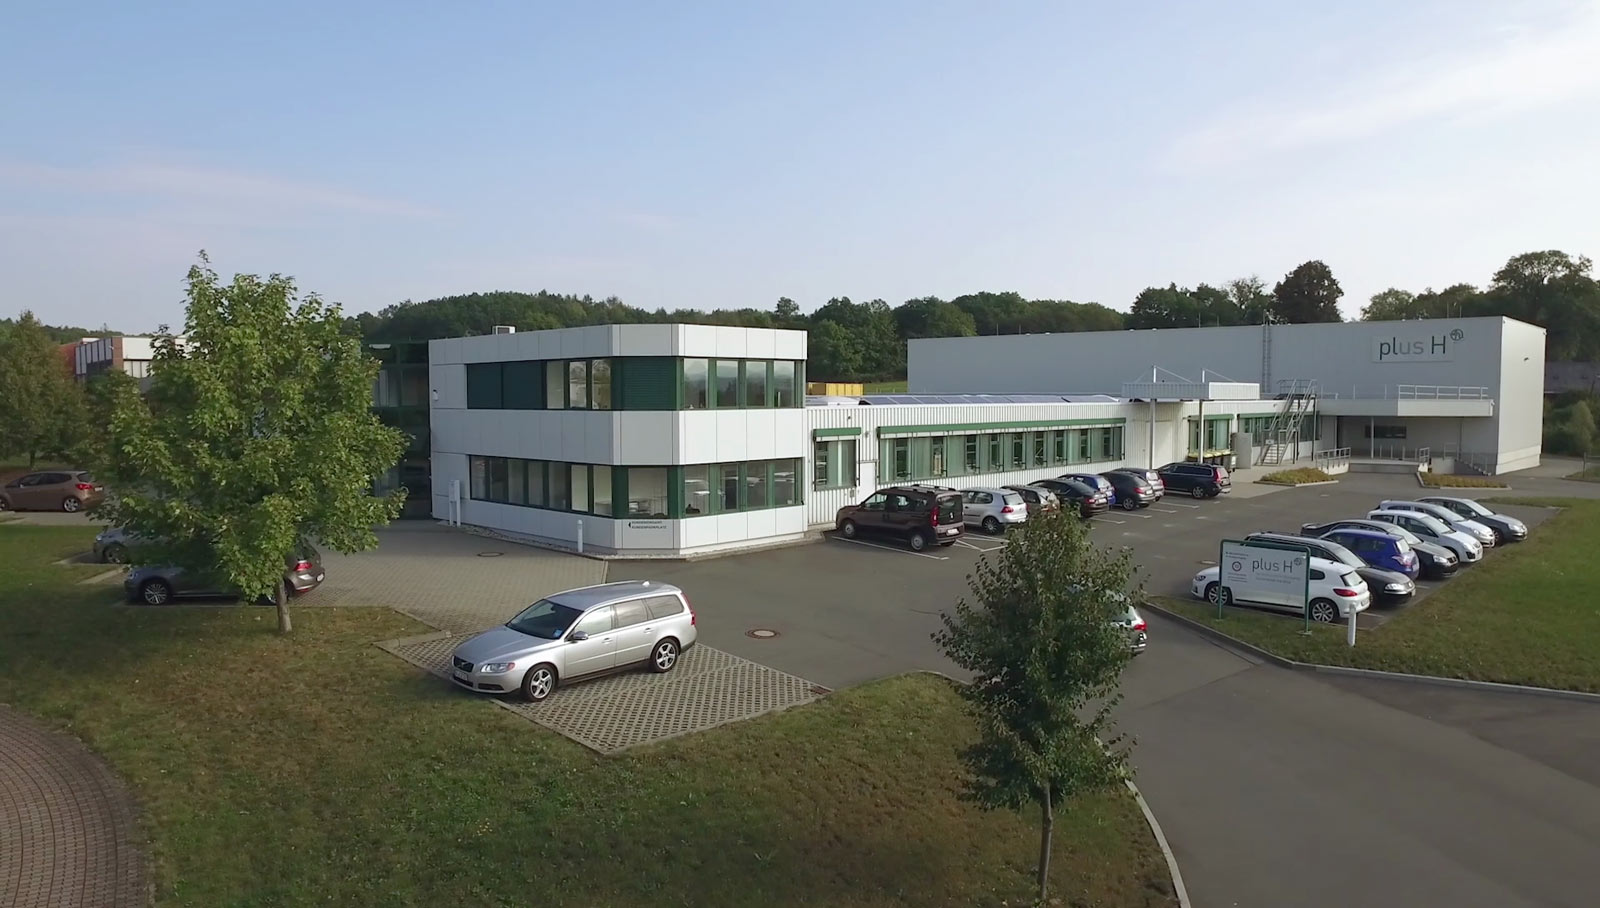 Flugaufnahme mit Drohne - Firmengebäude in Plauen PlusH Imageclip